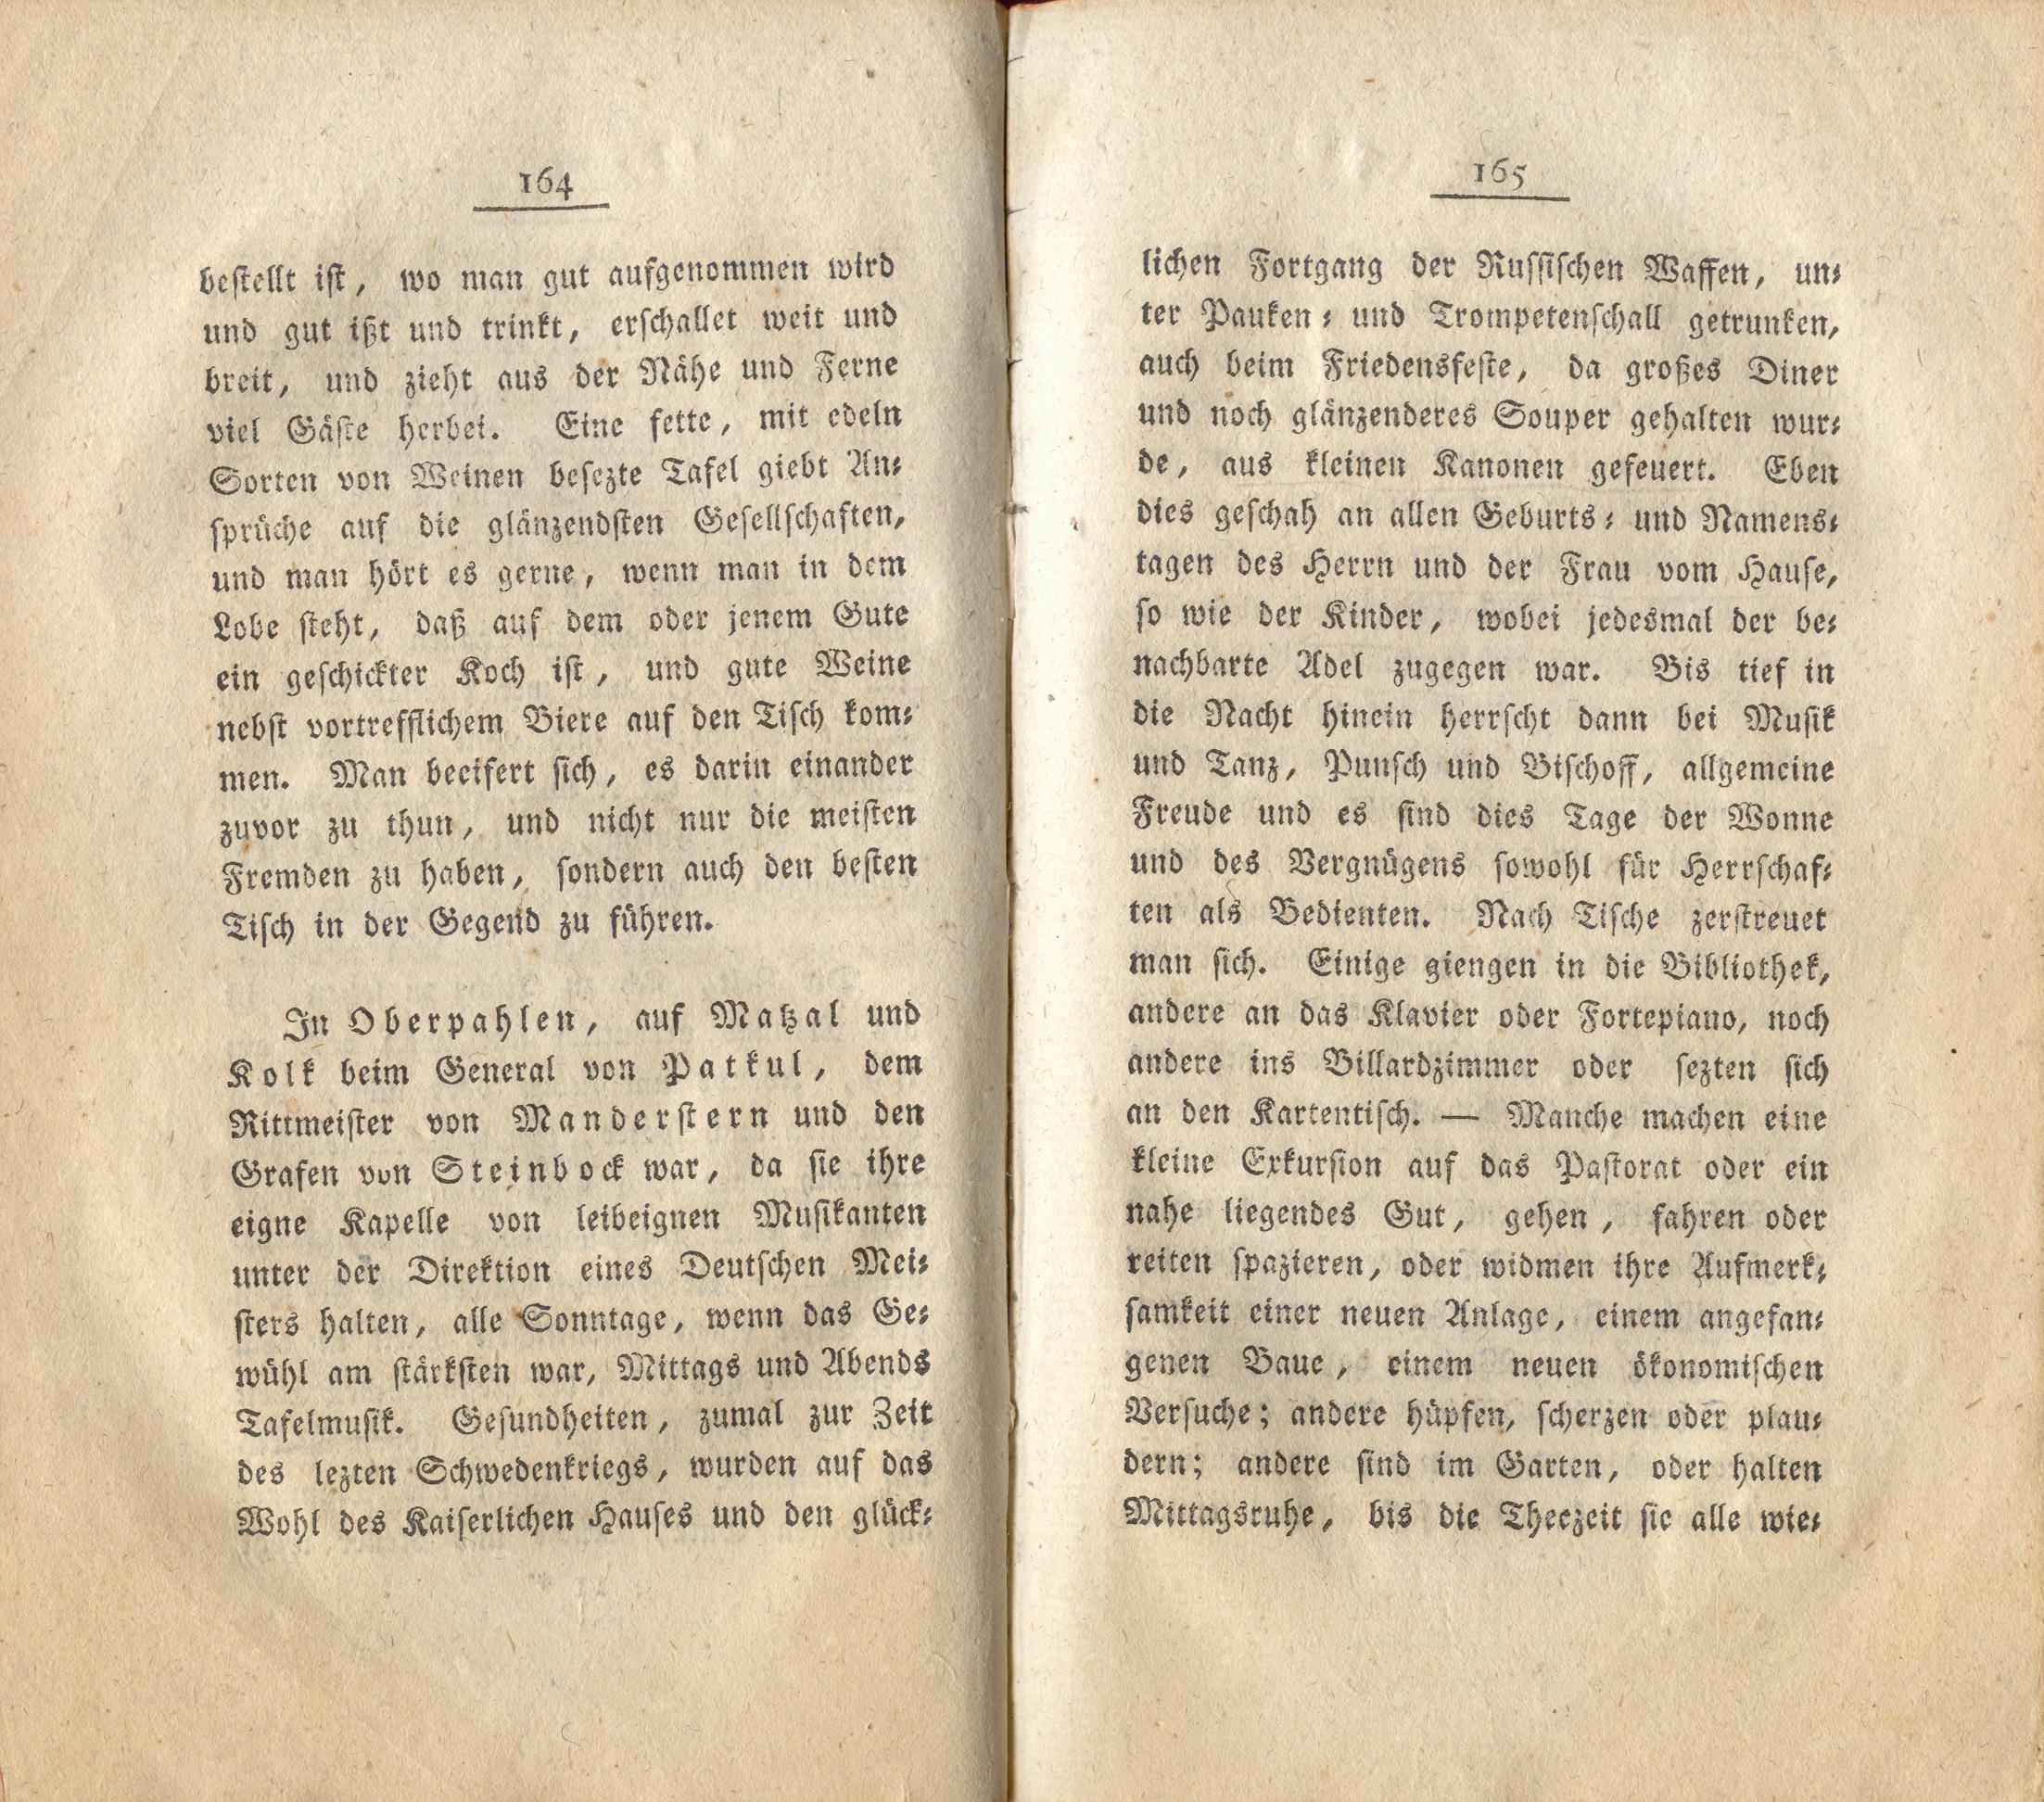 Neue Pittoresken aus Norden (1805) | 89. (164-165) Main body of text